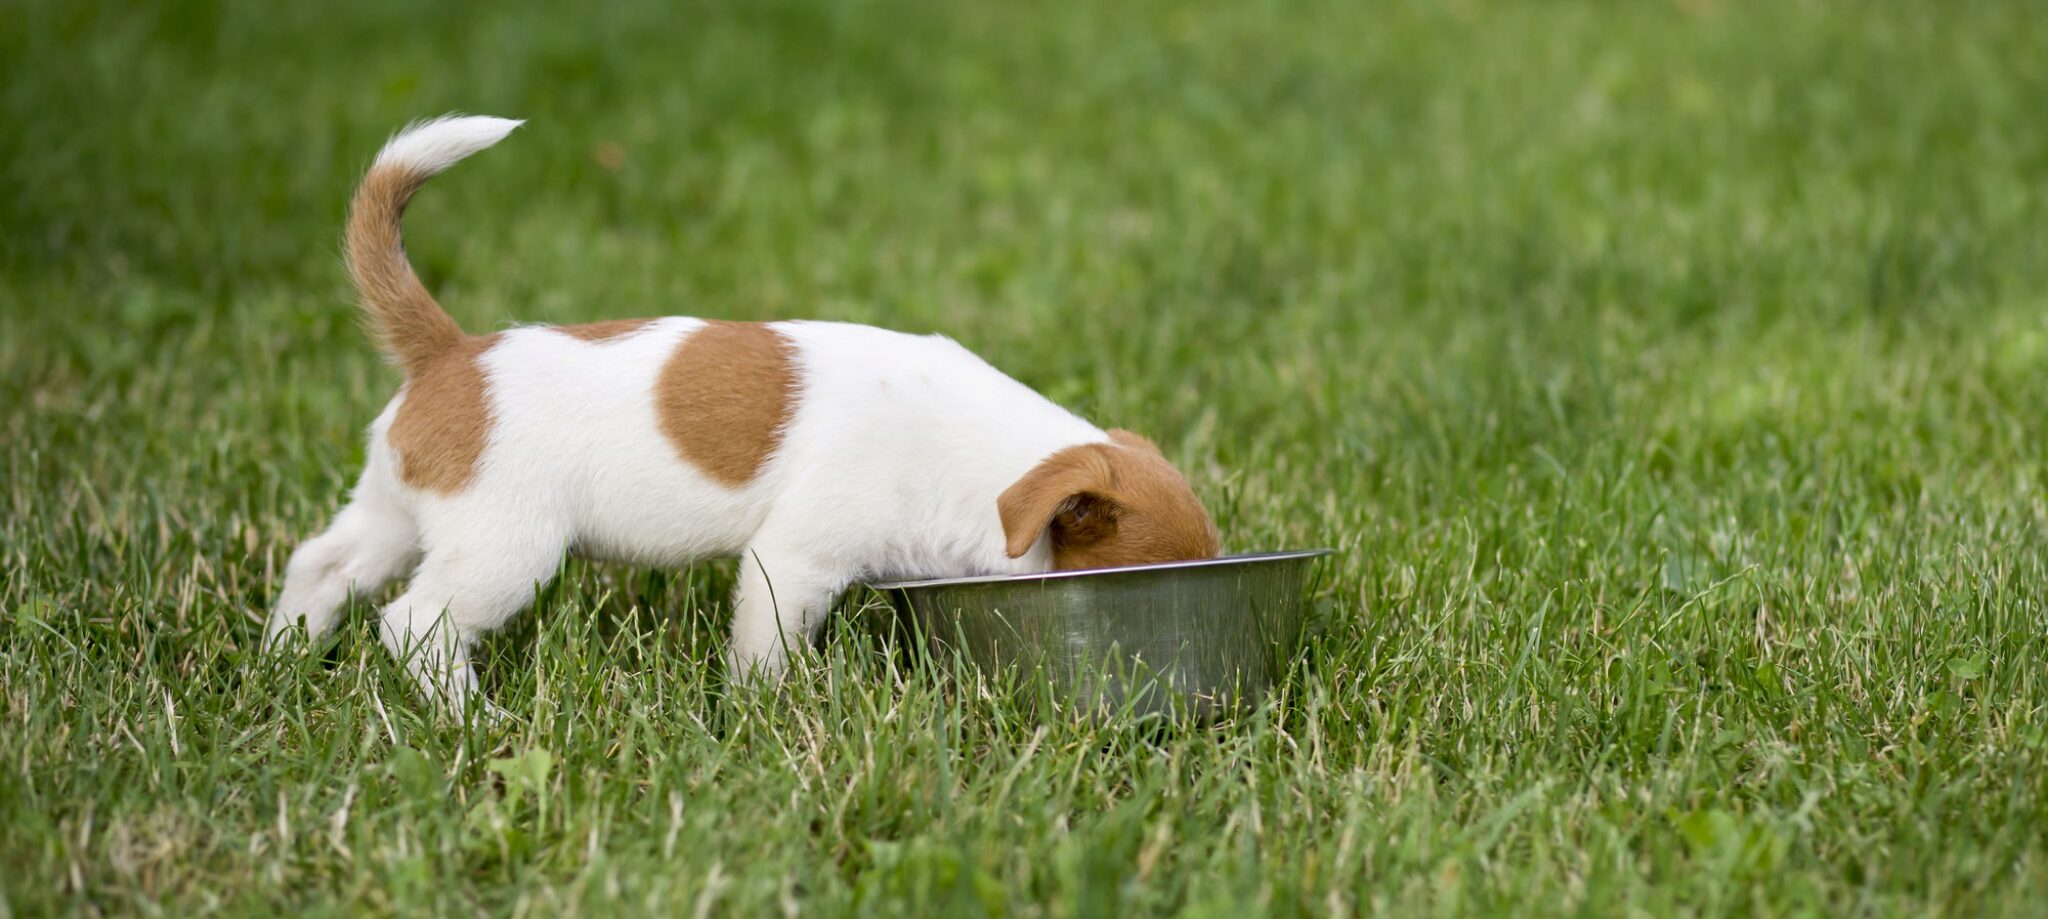 15 Meilleurs Aliments Pour Chiens Pour Jack Russell Terrier. Notre Guide Dalimentation